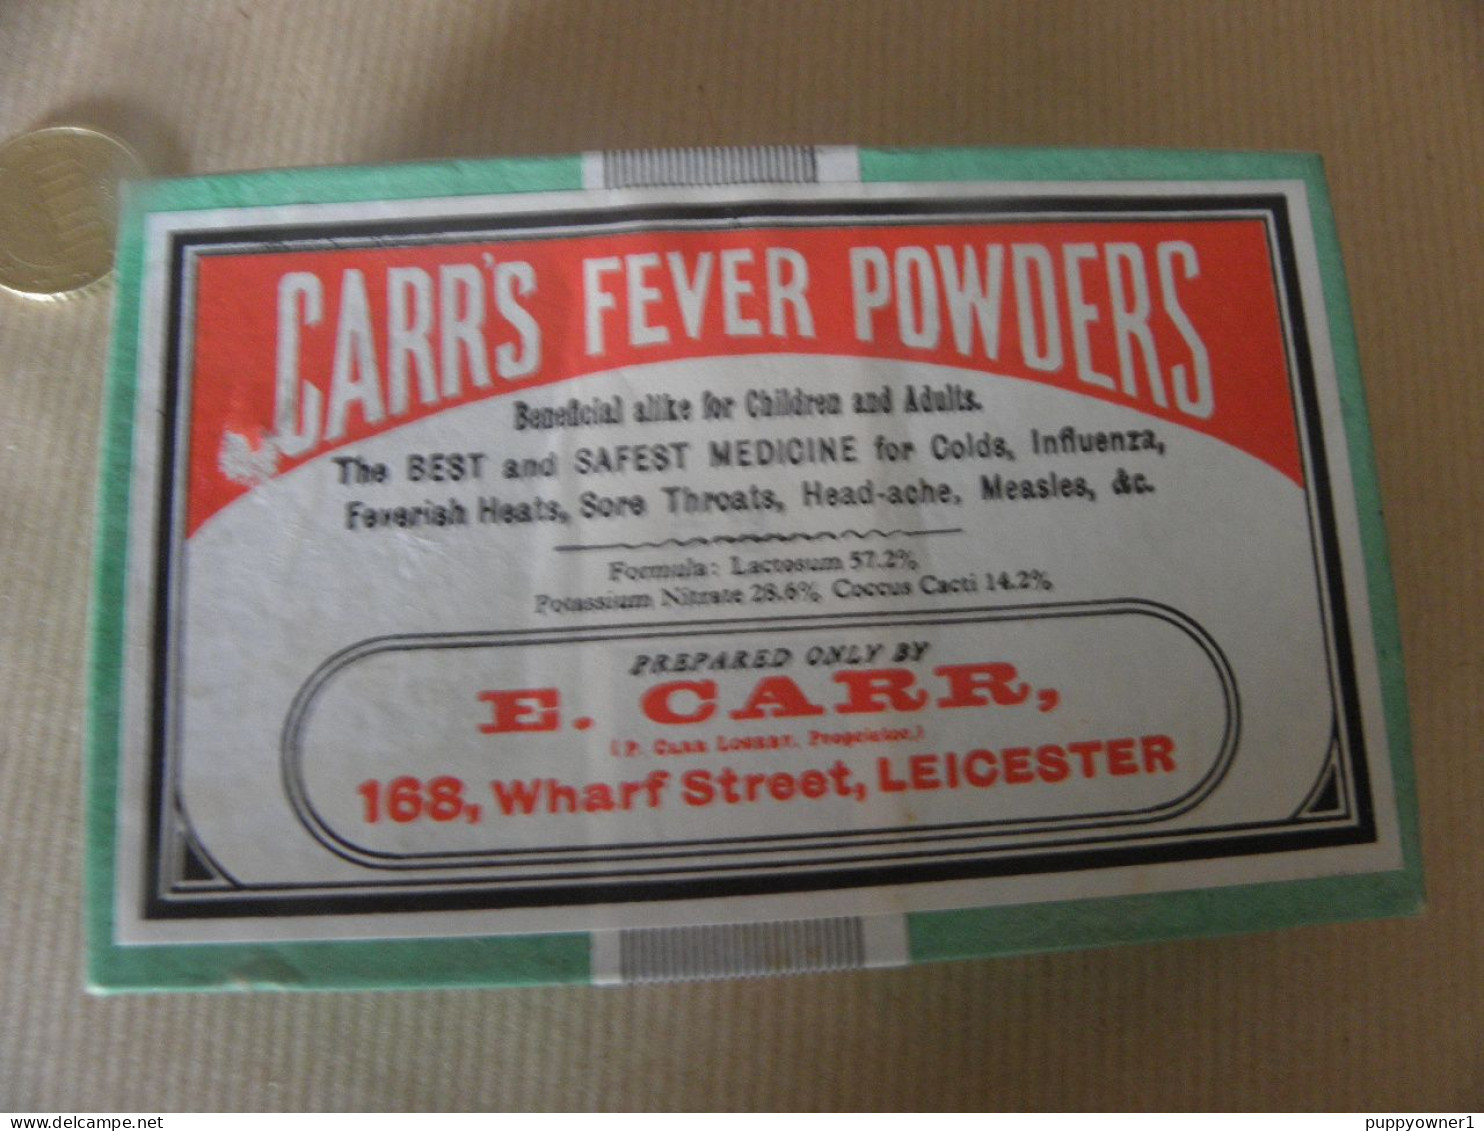 Antique Original Faux Médecine Guérit Tout , Carrs Fever Powders NE PAS UTILISER - Matériel Médical & Dentaire